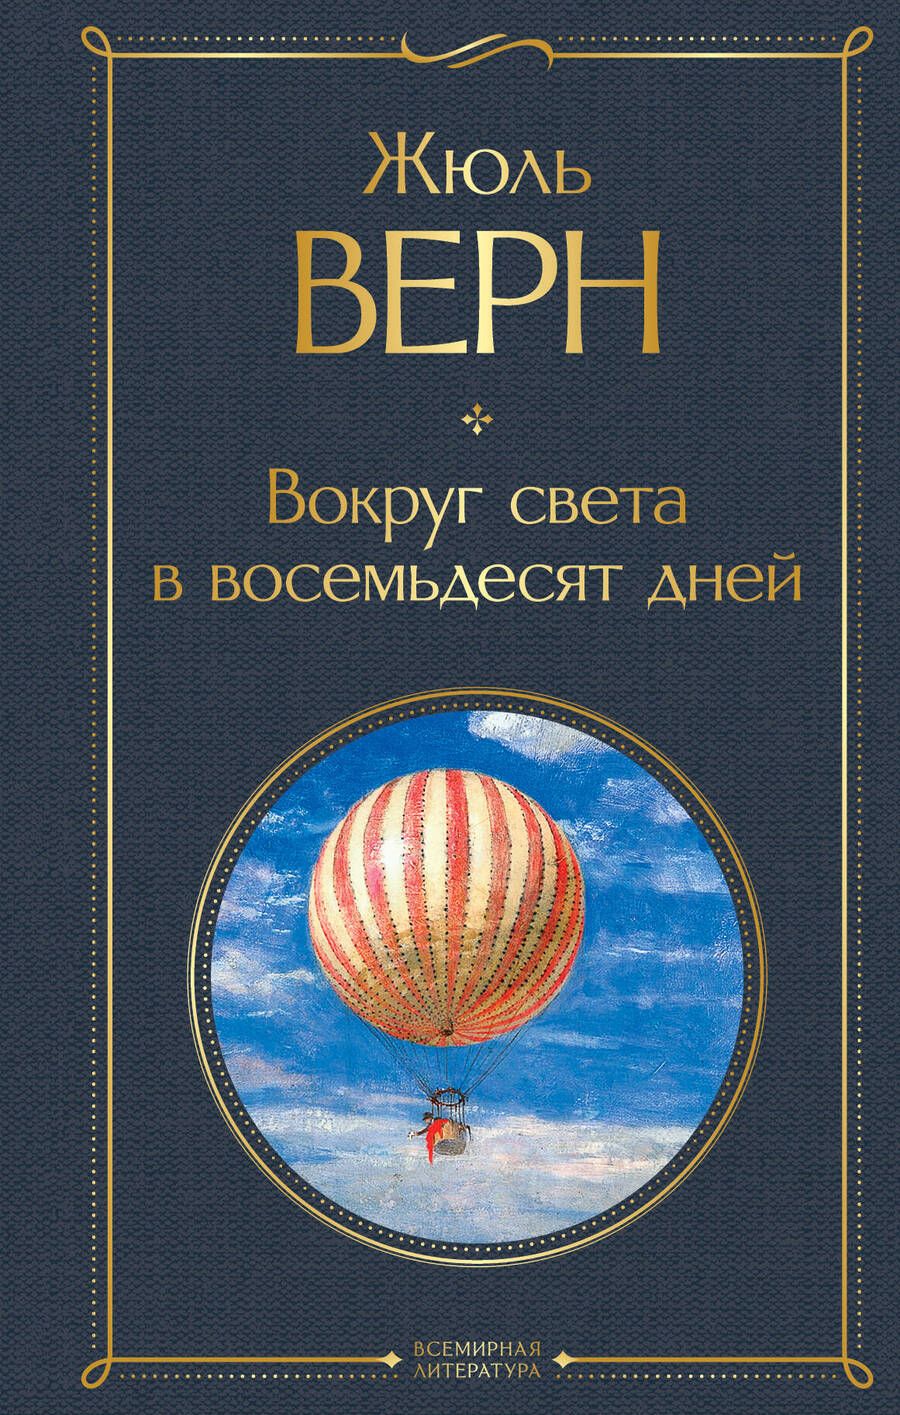 Обложка книги "Верн: Вокруг света в восемьдесят дней"